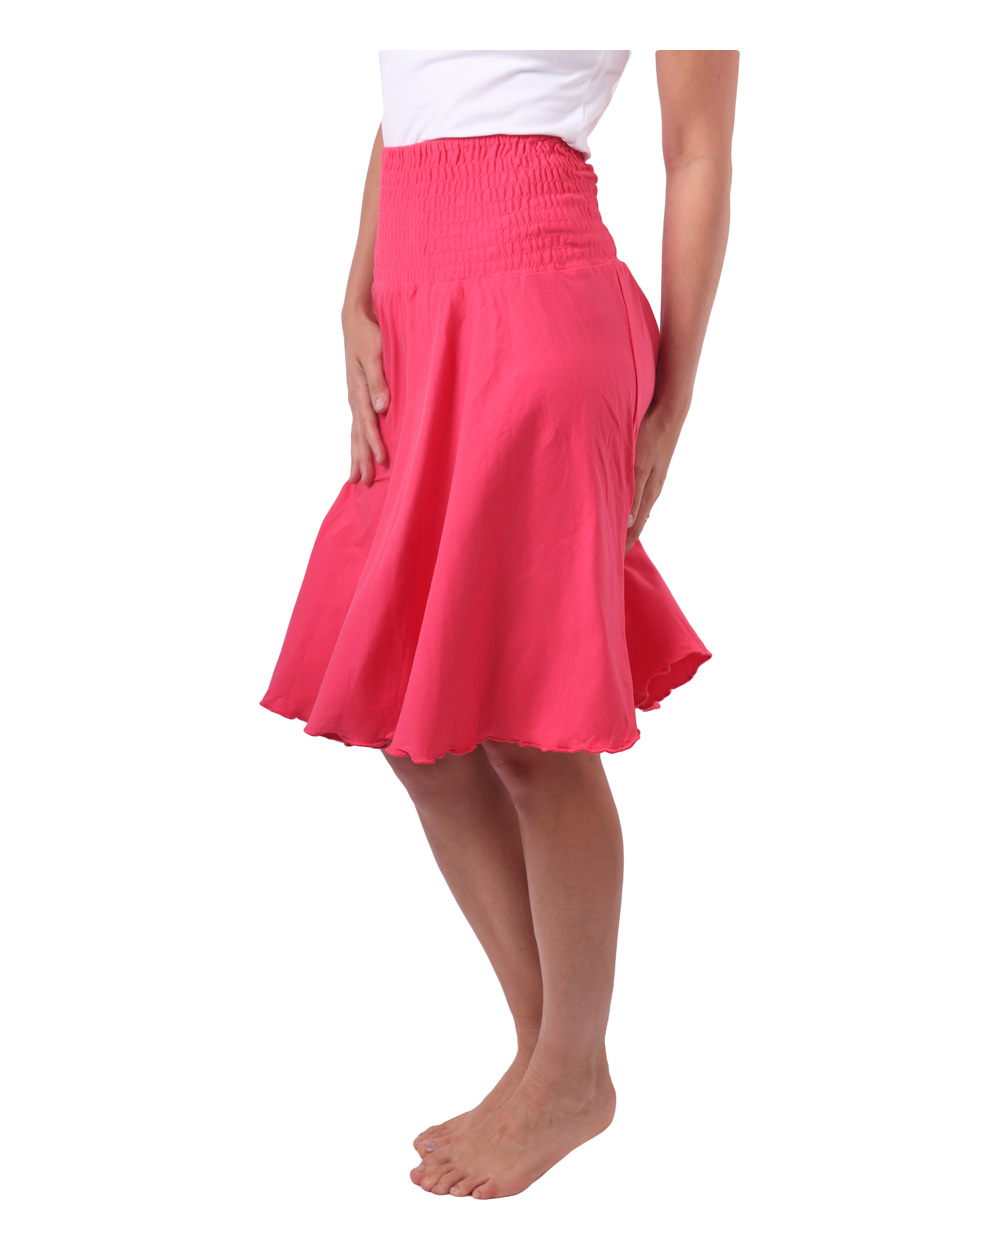 Women's circle skirt, salmon pink